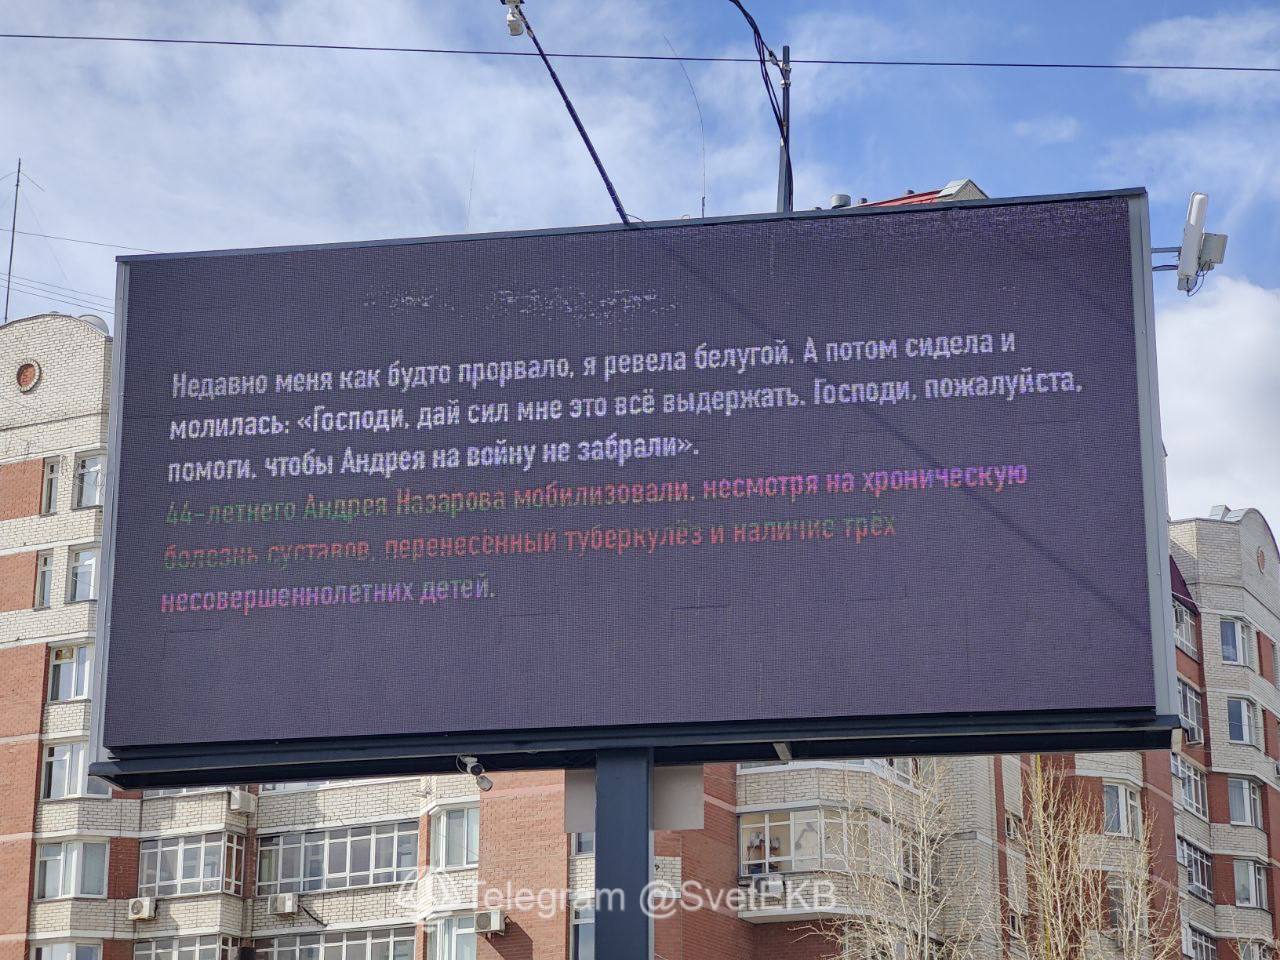 "Нас кинули як м'ясо, без прикриття": у Росії з'явилися рекламні щити з цитатами "мобіків" про реалії війни проти України. Фото